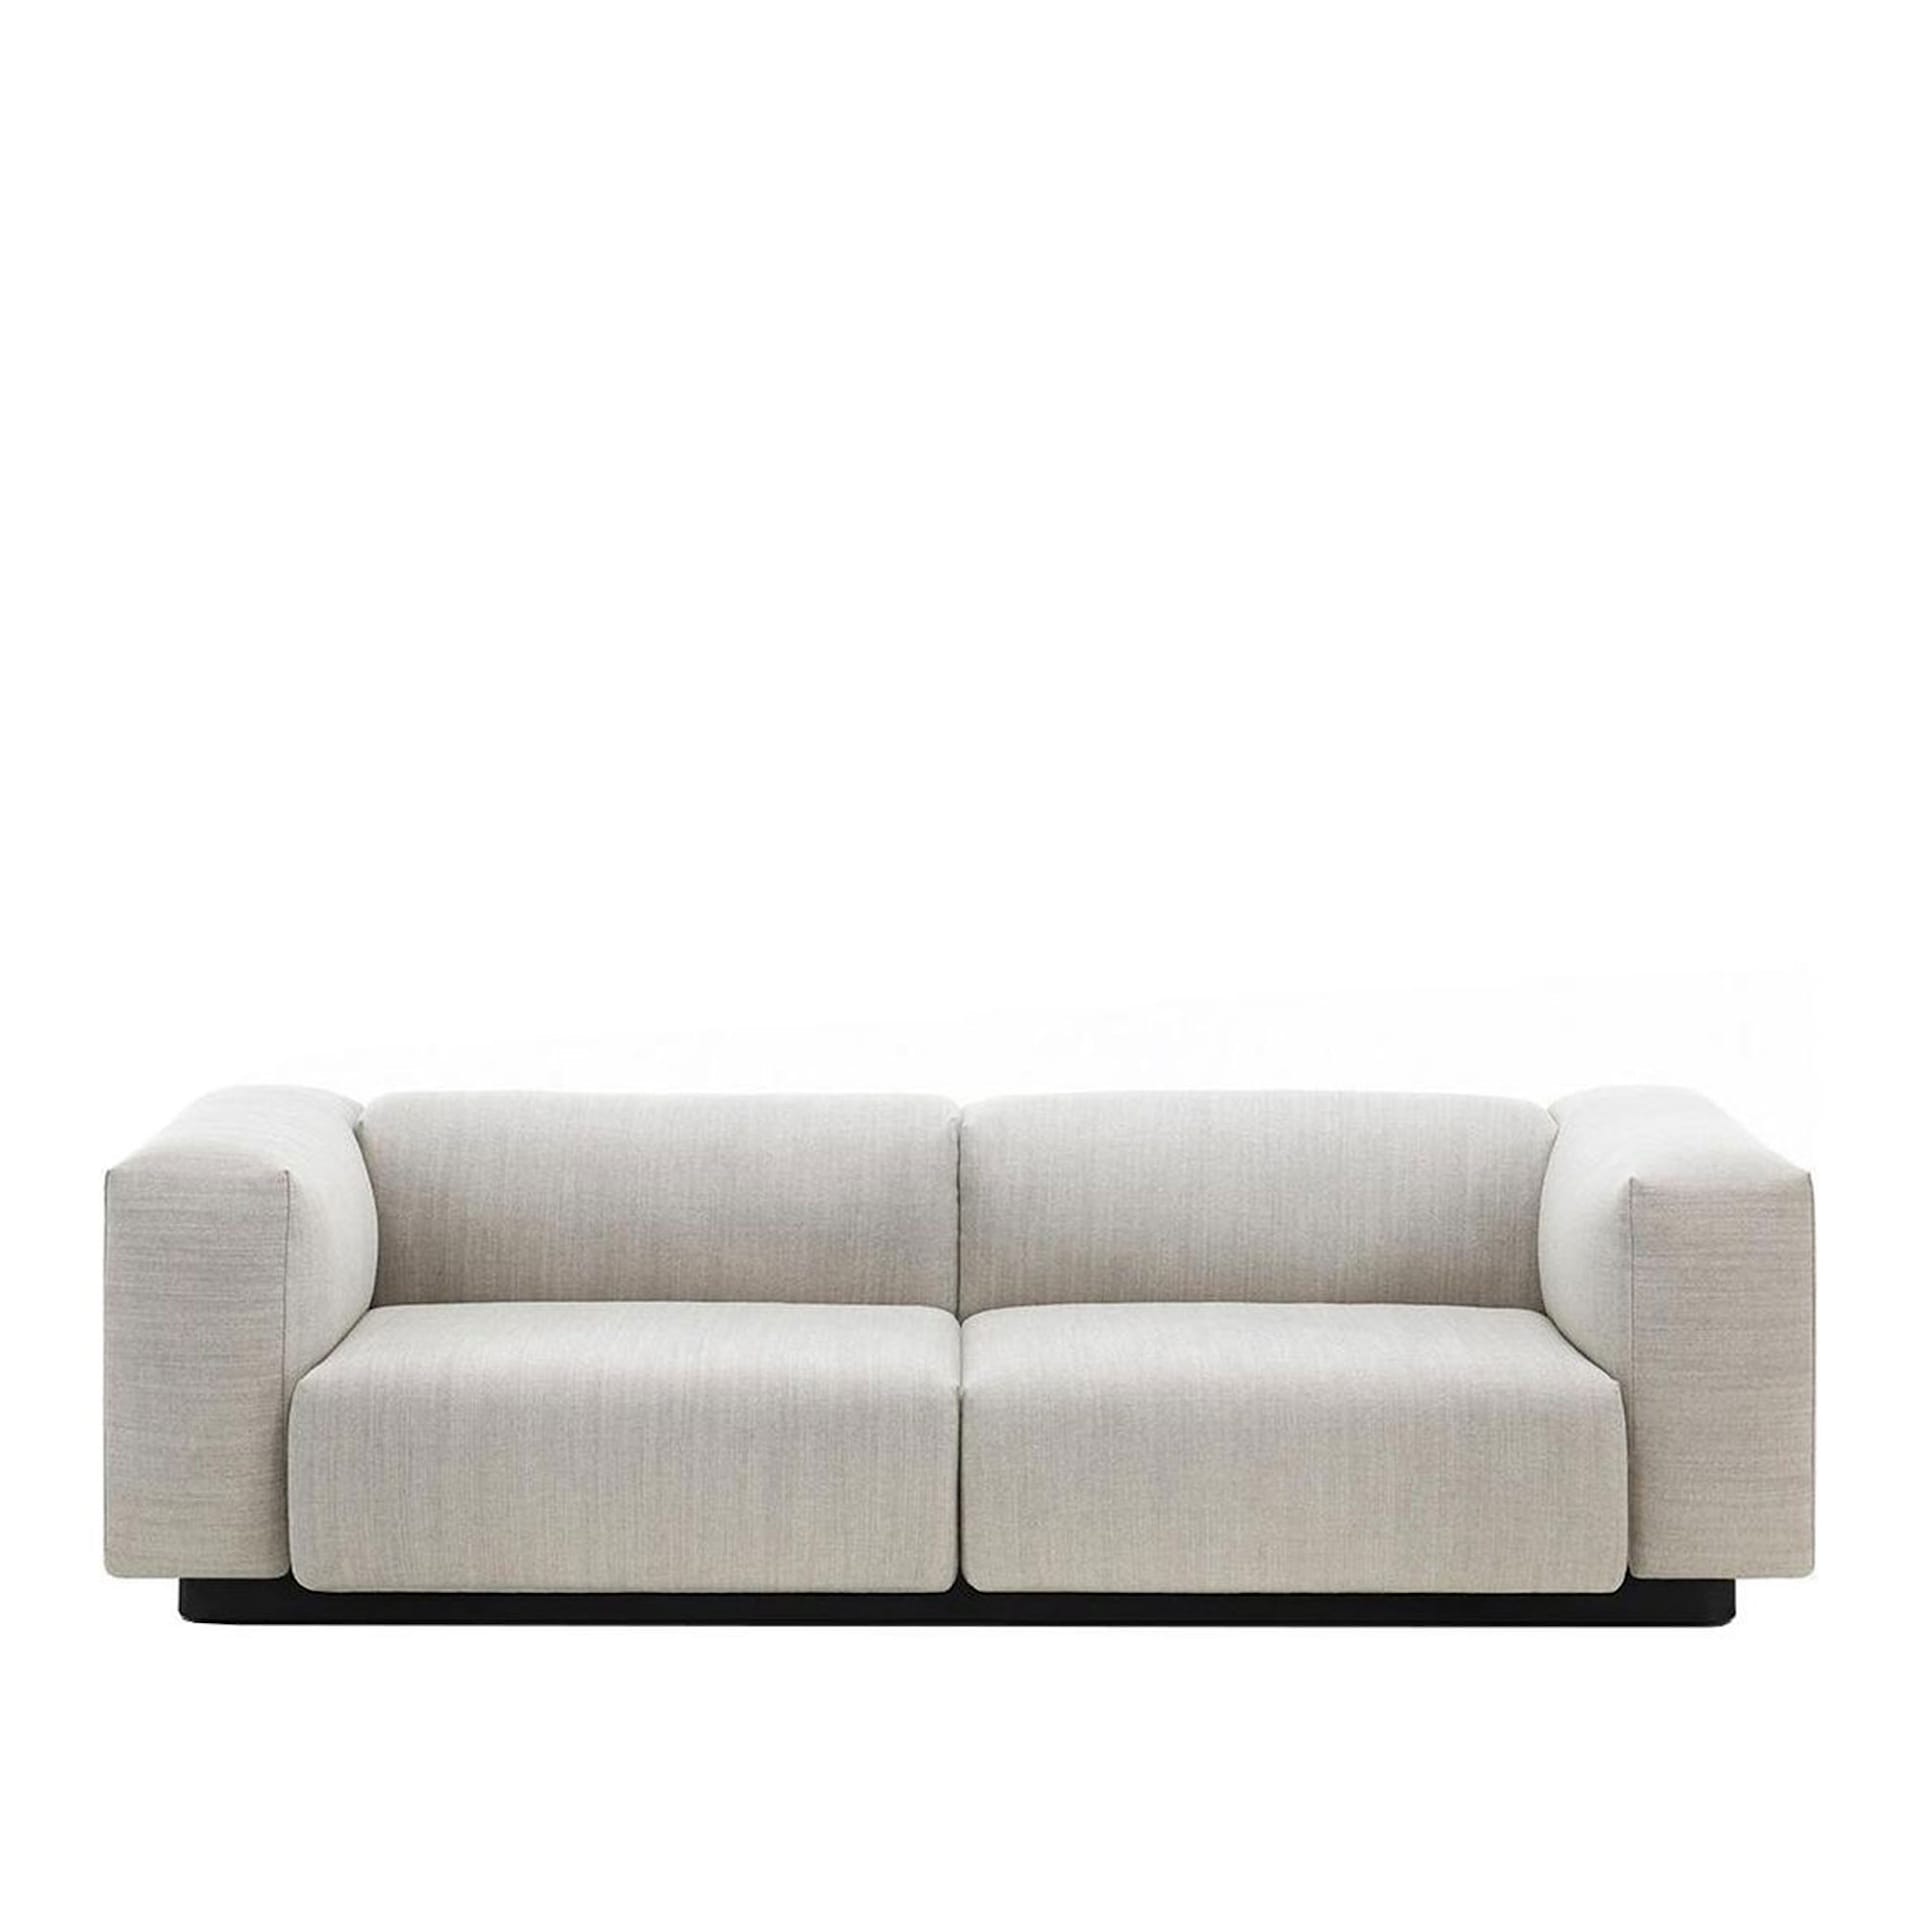 Soft Modular Sofa - 2-sits - Vitra - Jasper Morrison - NO GA